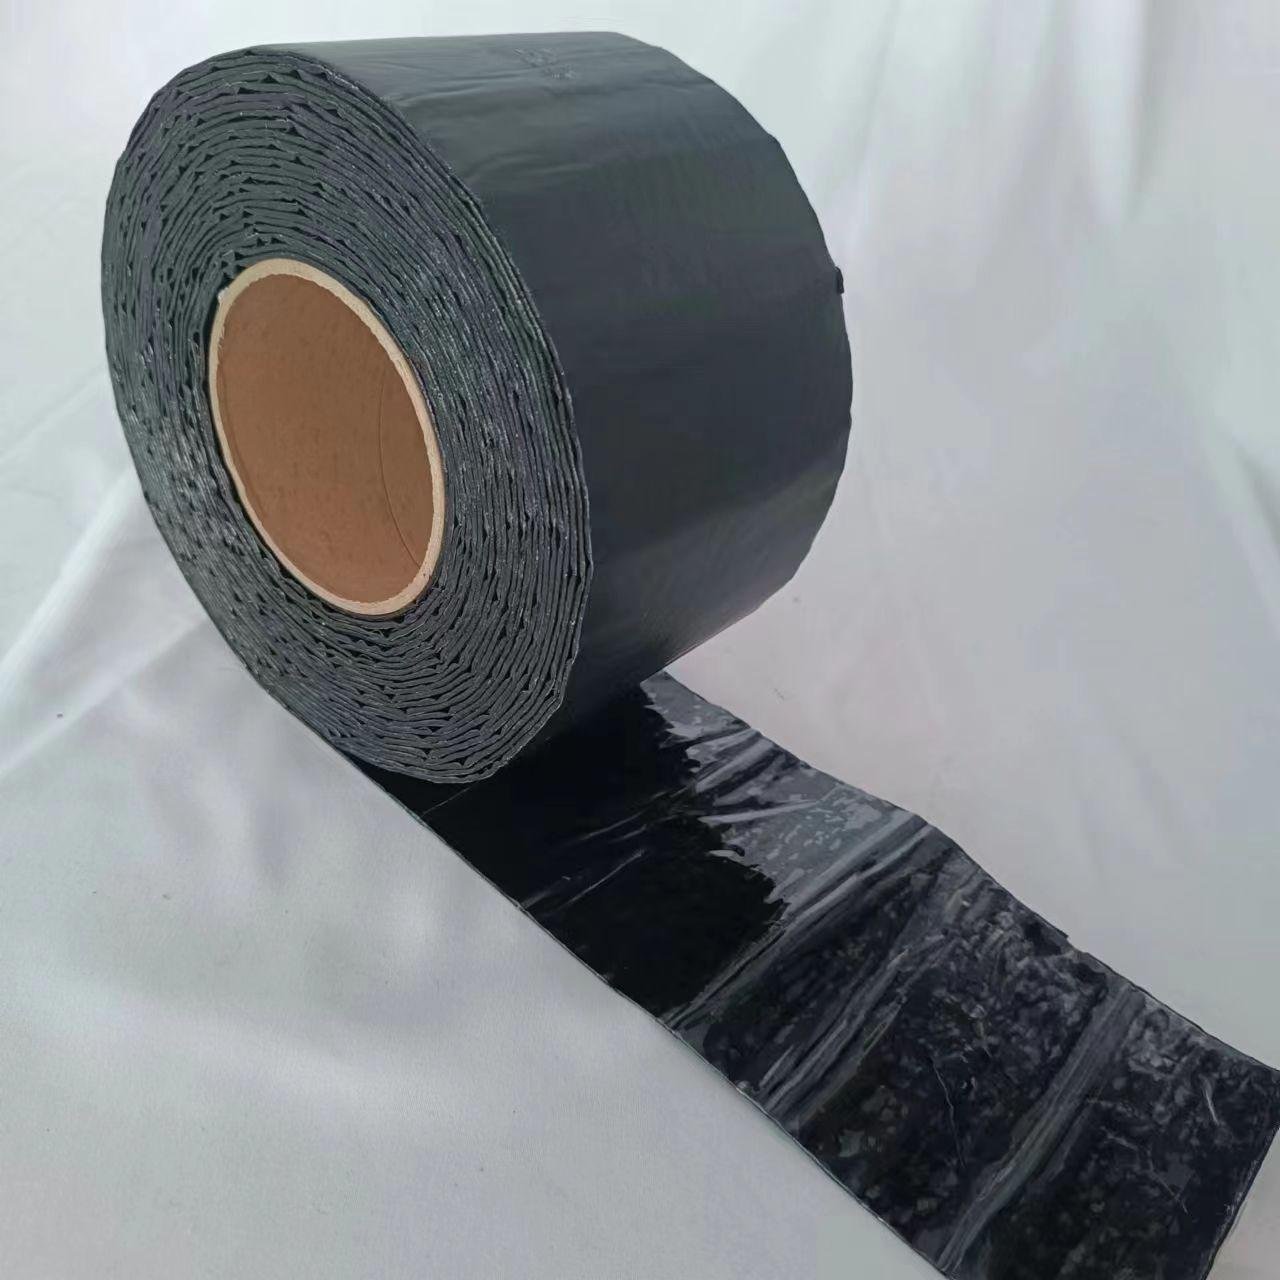 Hot selling Dark Grey Aluminum Foil Butimen Tape for Roofing Repair 5